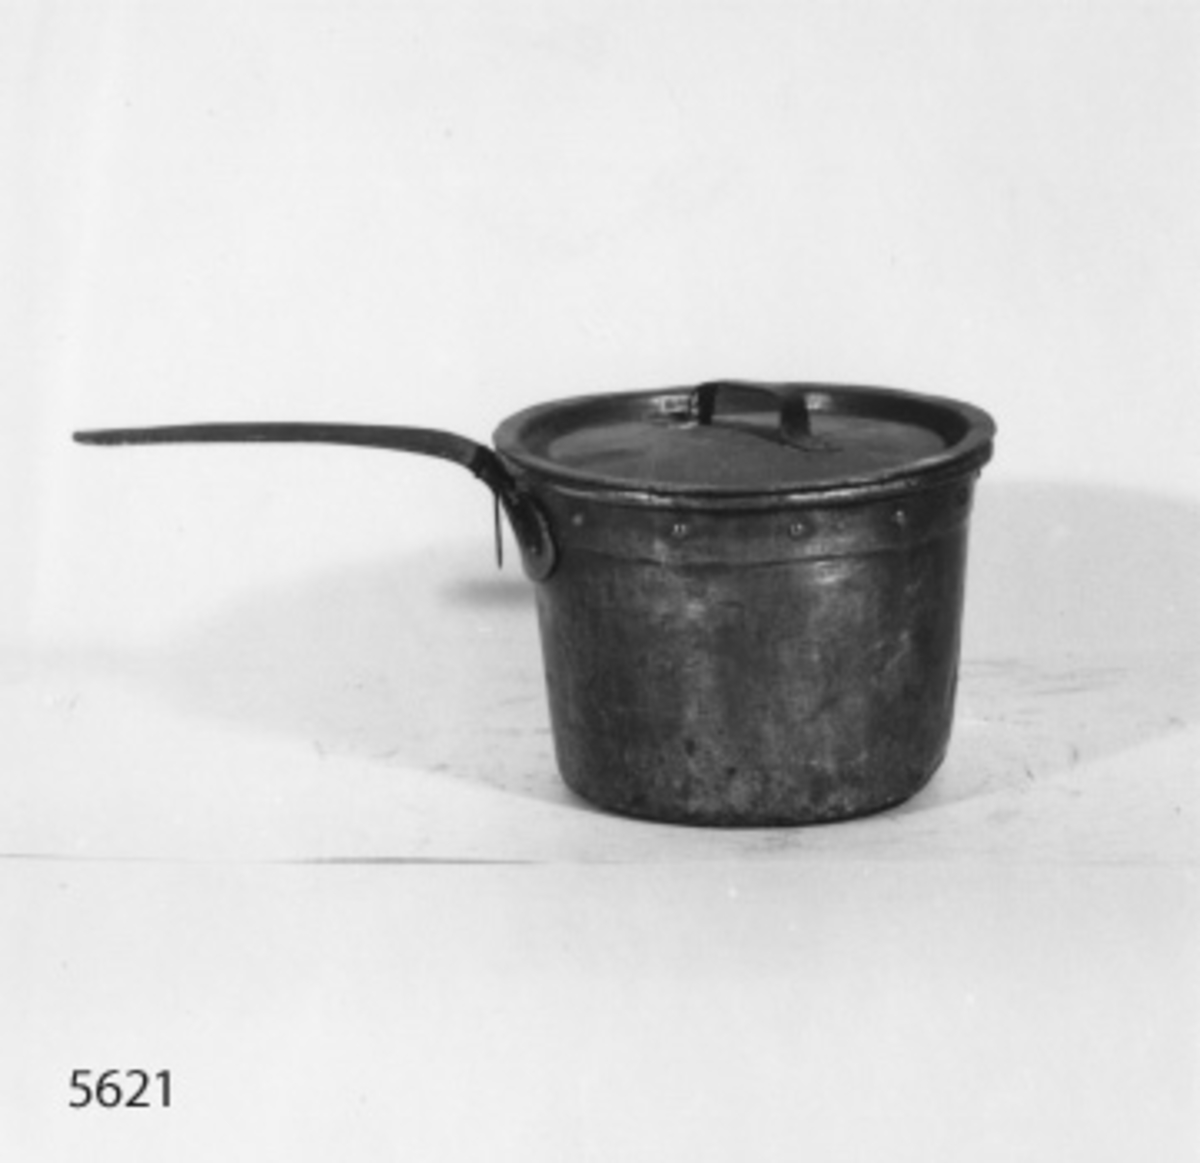 Panna koppar-, mindre. På lock och handtag märkt: "Örnen" samt kronstämpel på handtaget. Från 1880.

Sicksacksskarvar på botten samt nitning på sidan.